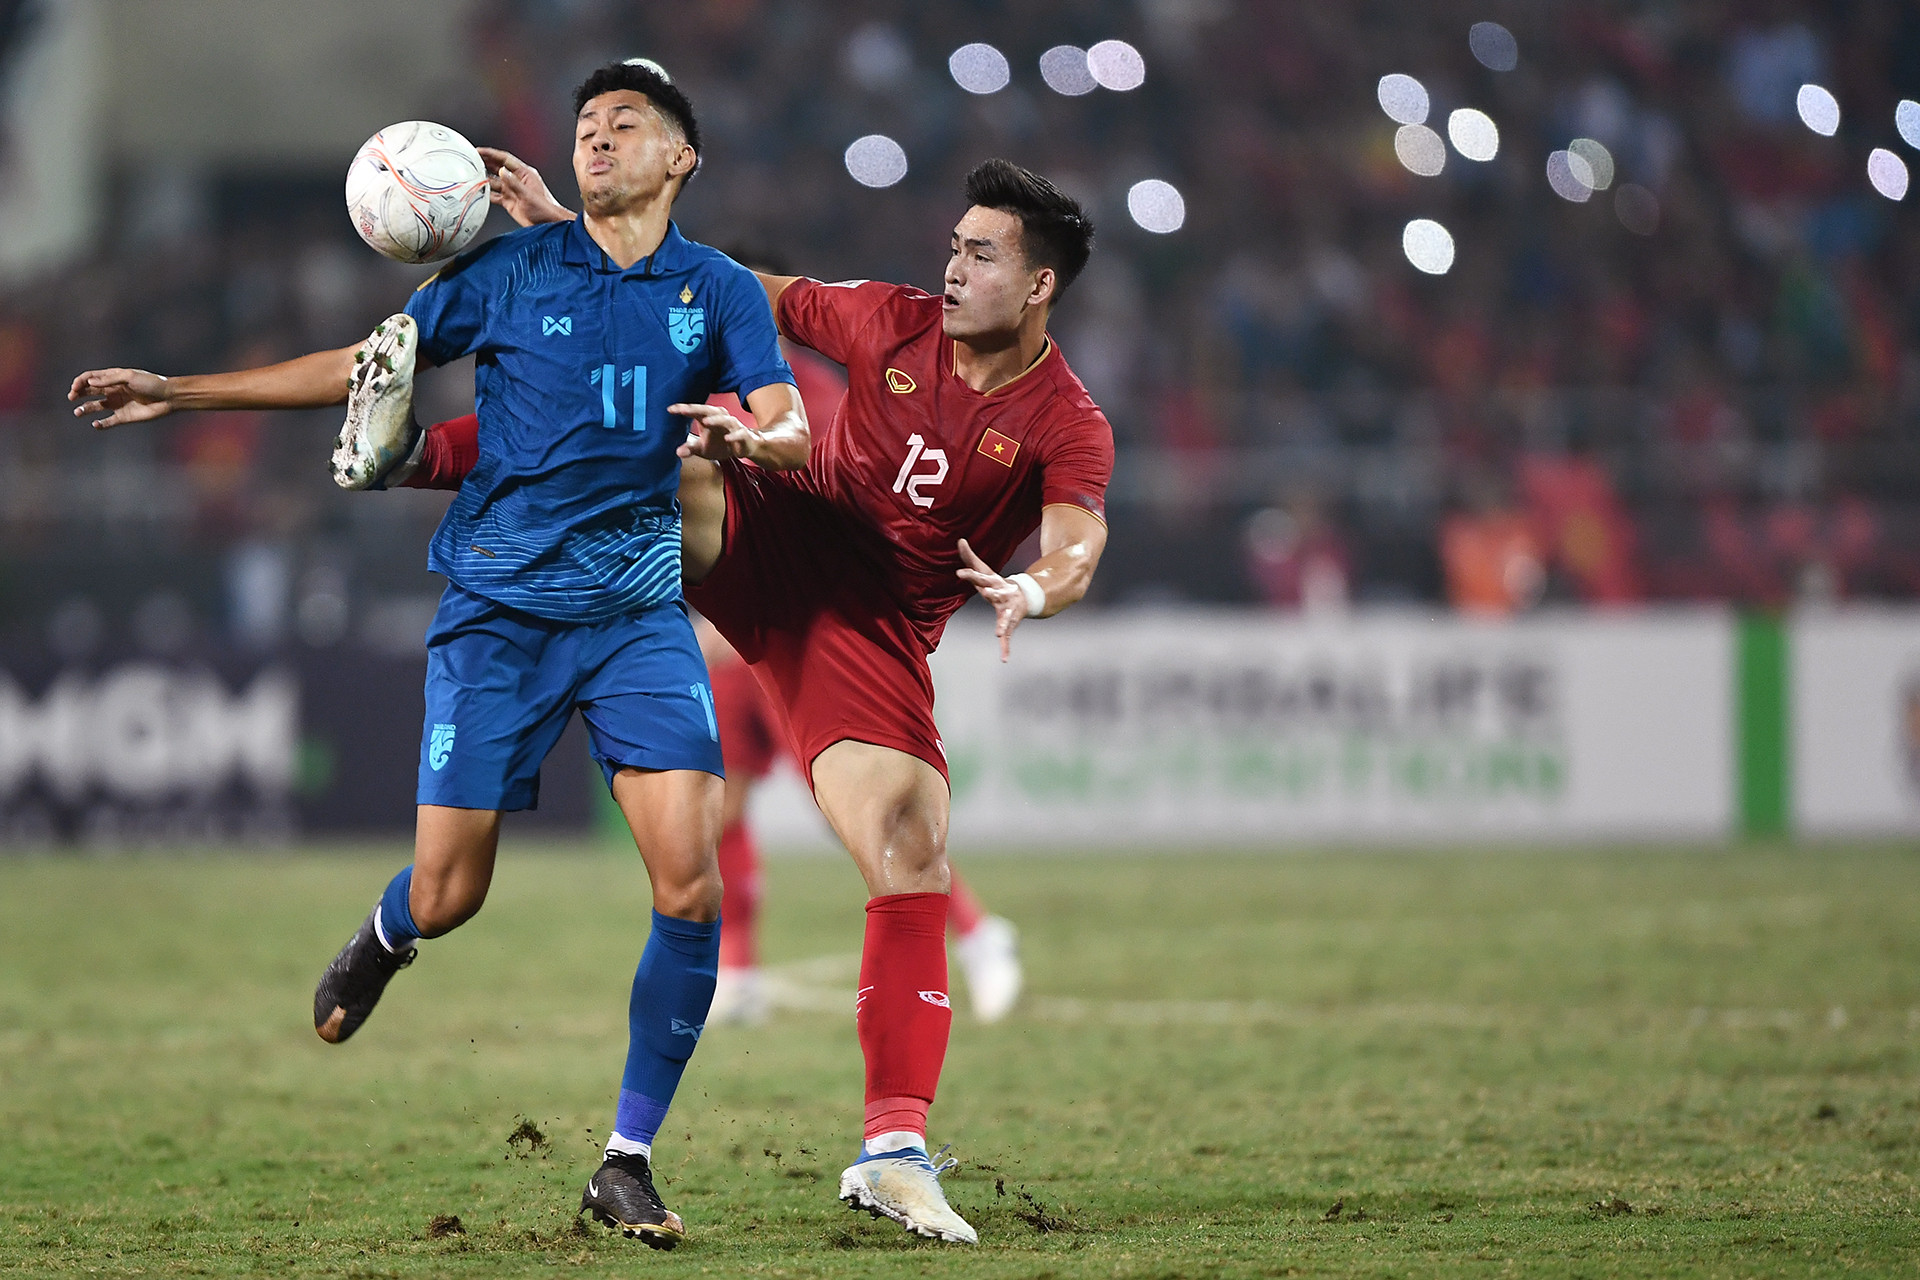 Tuyển Việt Nam đua vé World Cup 2026: Cần một cơ chế… mở